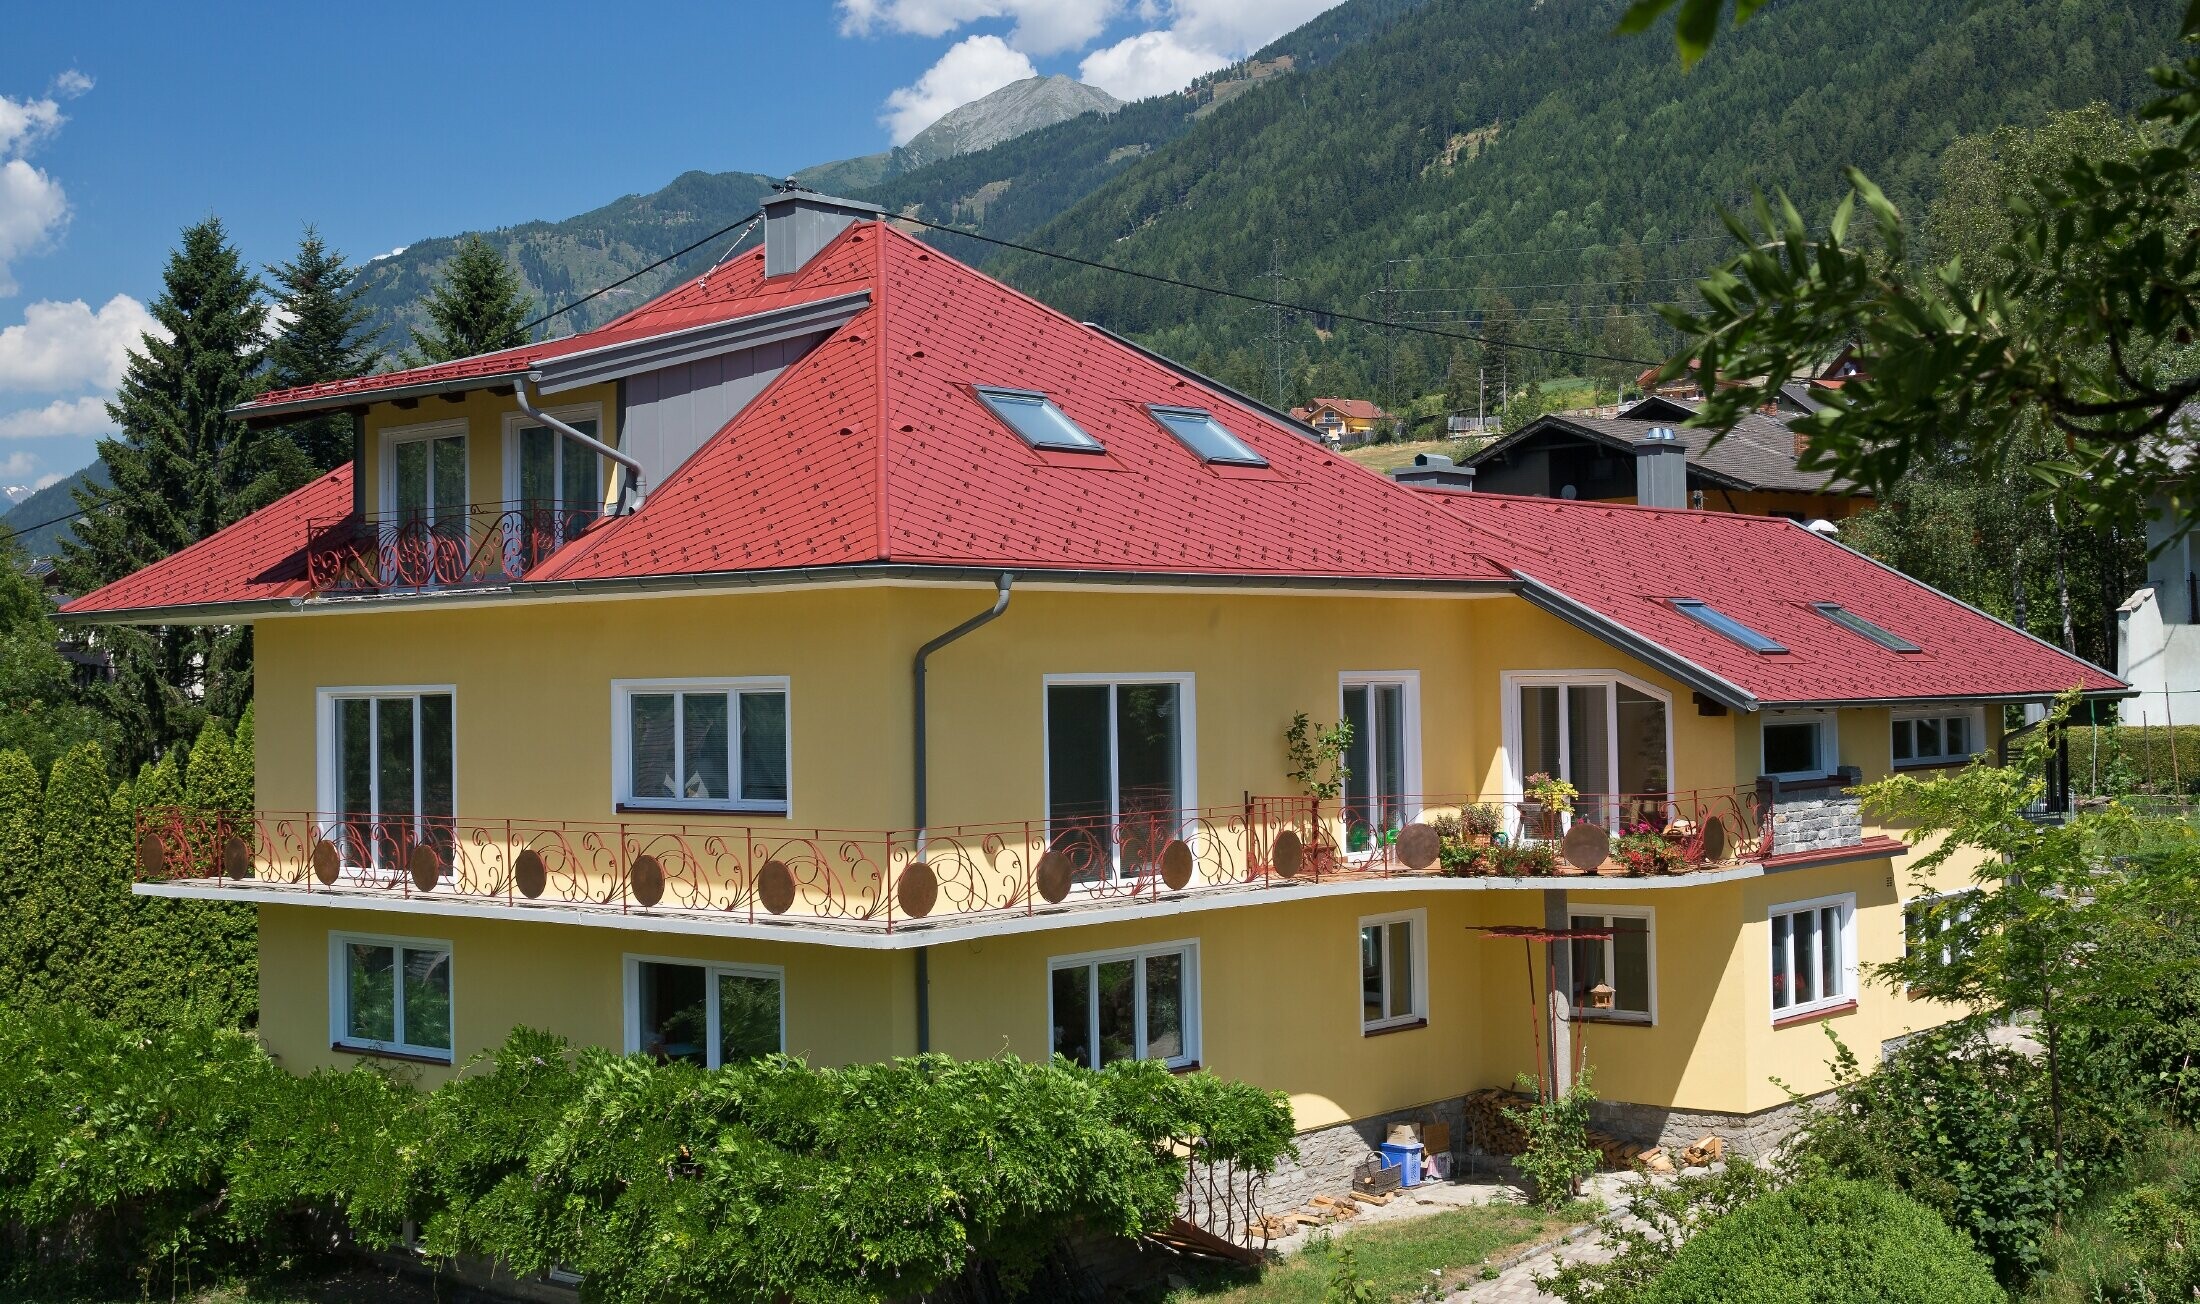 Classica casa unifamiliare con tetto a padiglione, rivestita con le scaglie in rosso ossido.